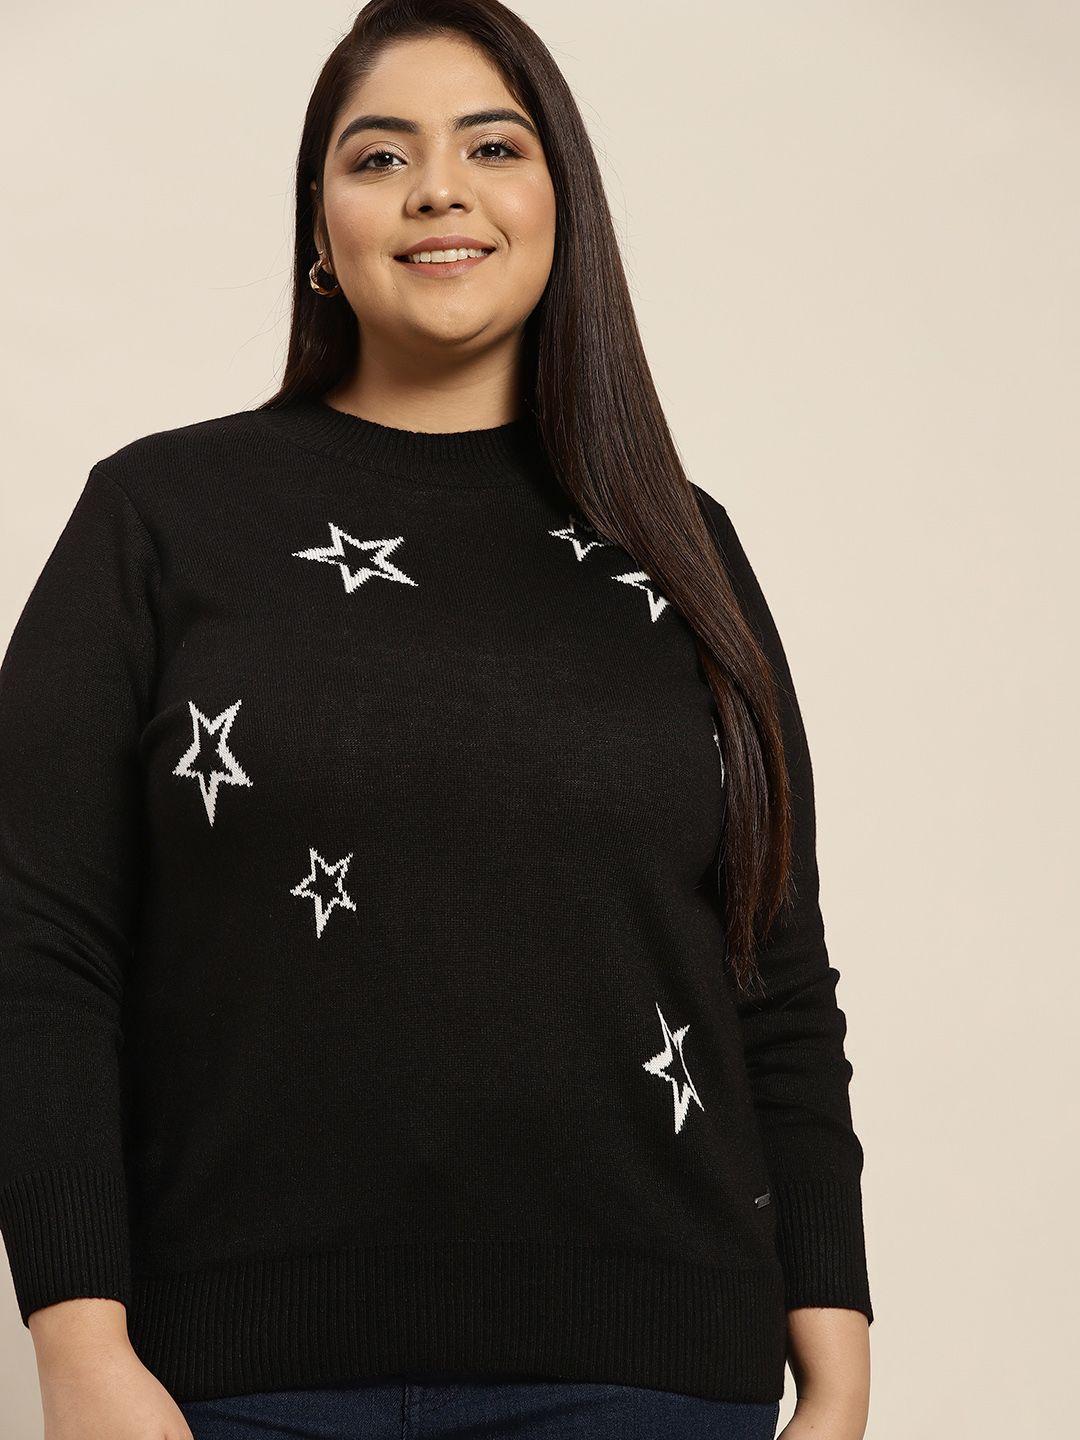 sztori women plus size black & white self design acrylic sweater